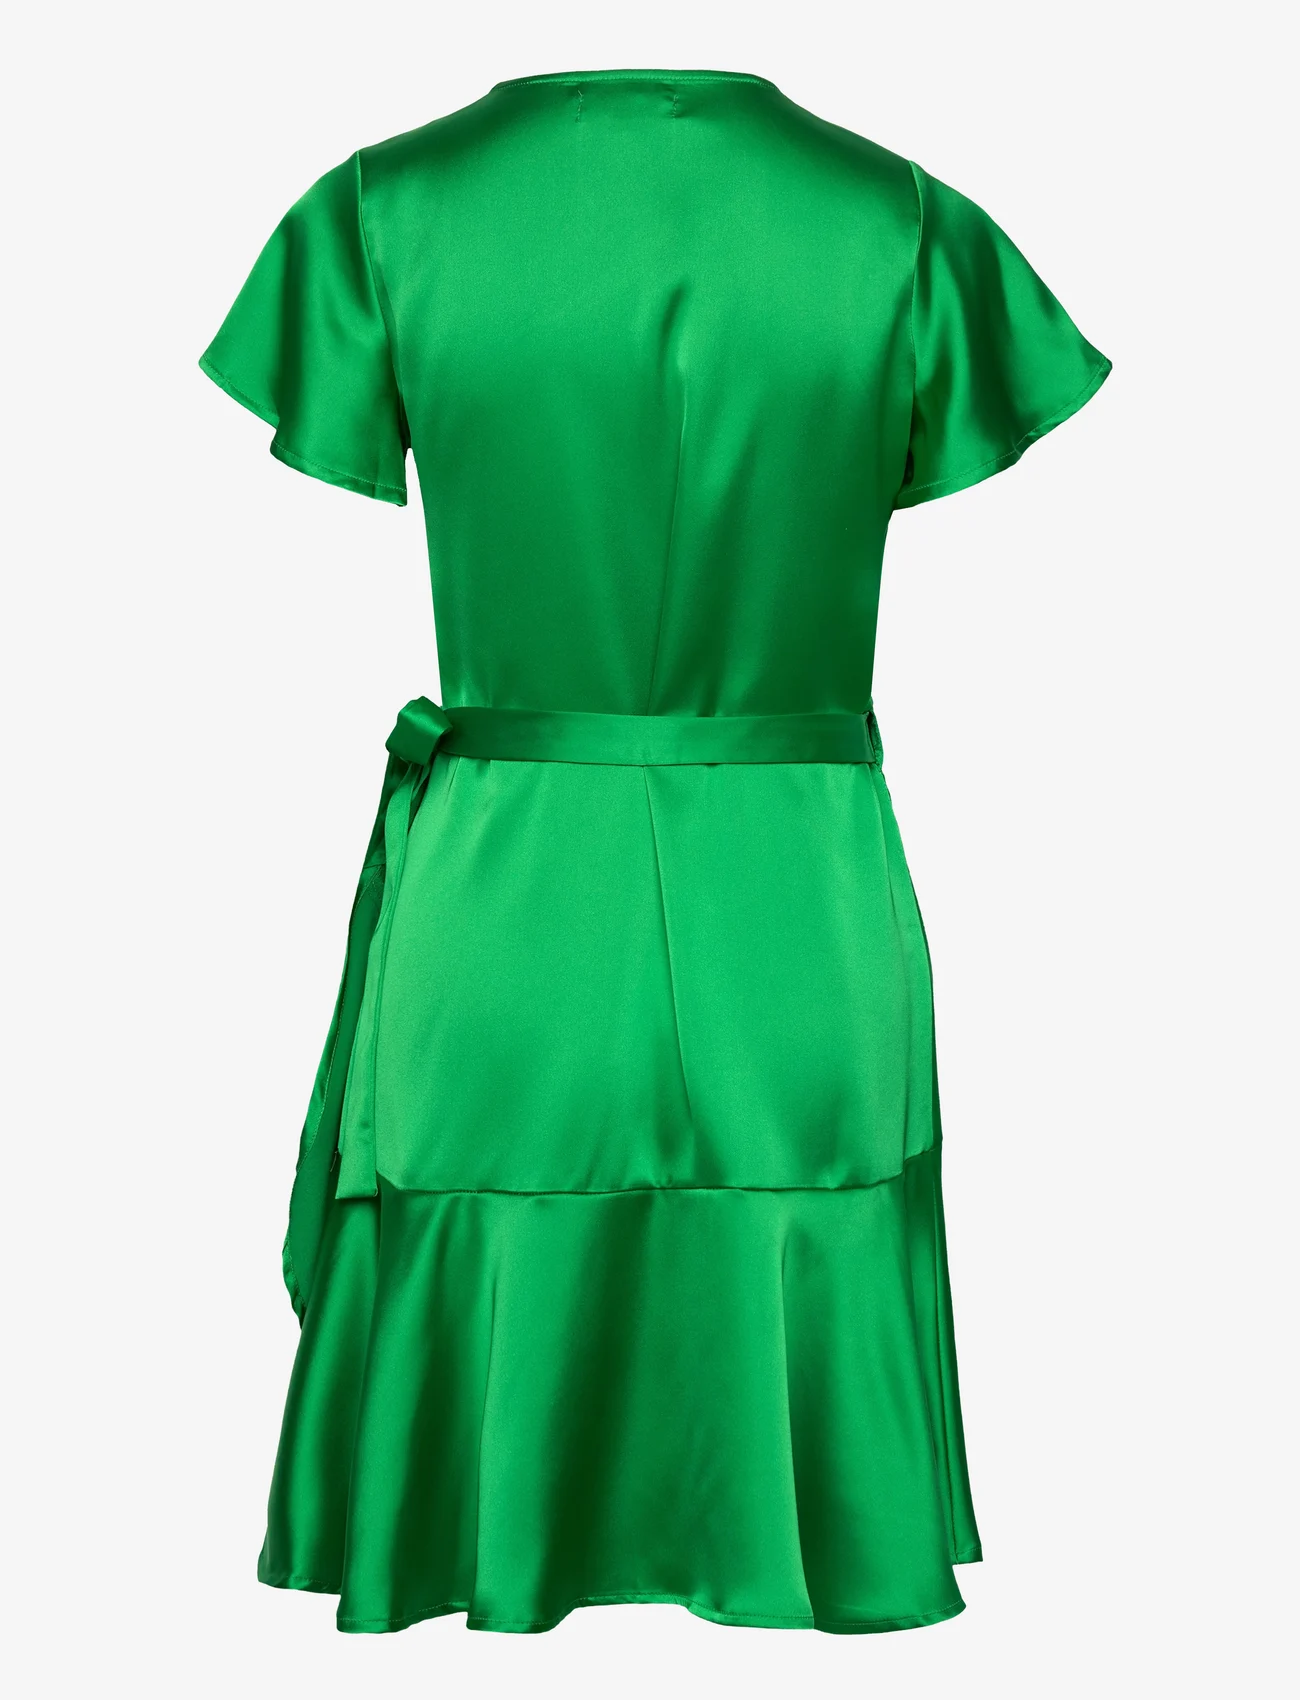 Lollys Laundry - Miranda Wrap around dress - odzież imprezowa w cenach outletowych - green - 1